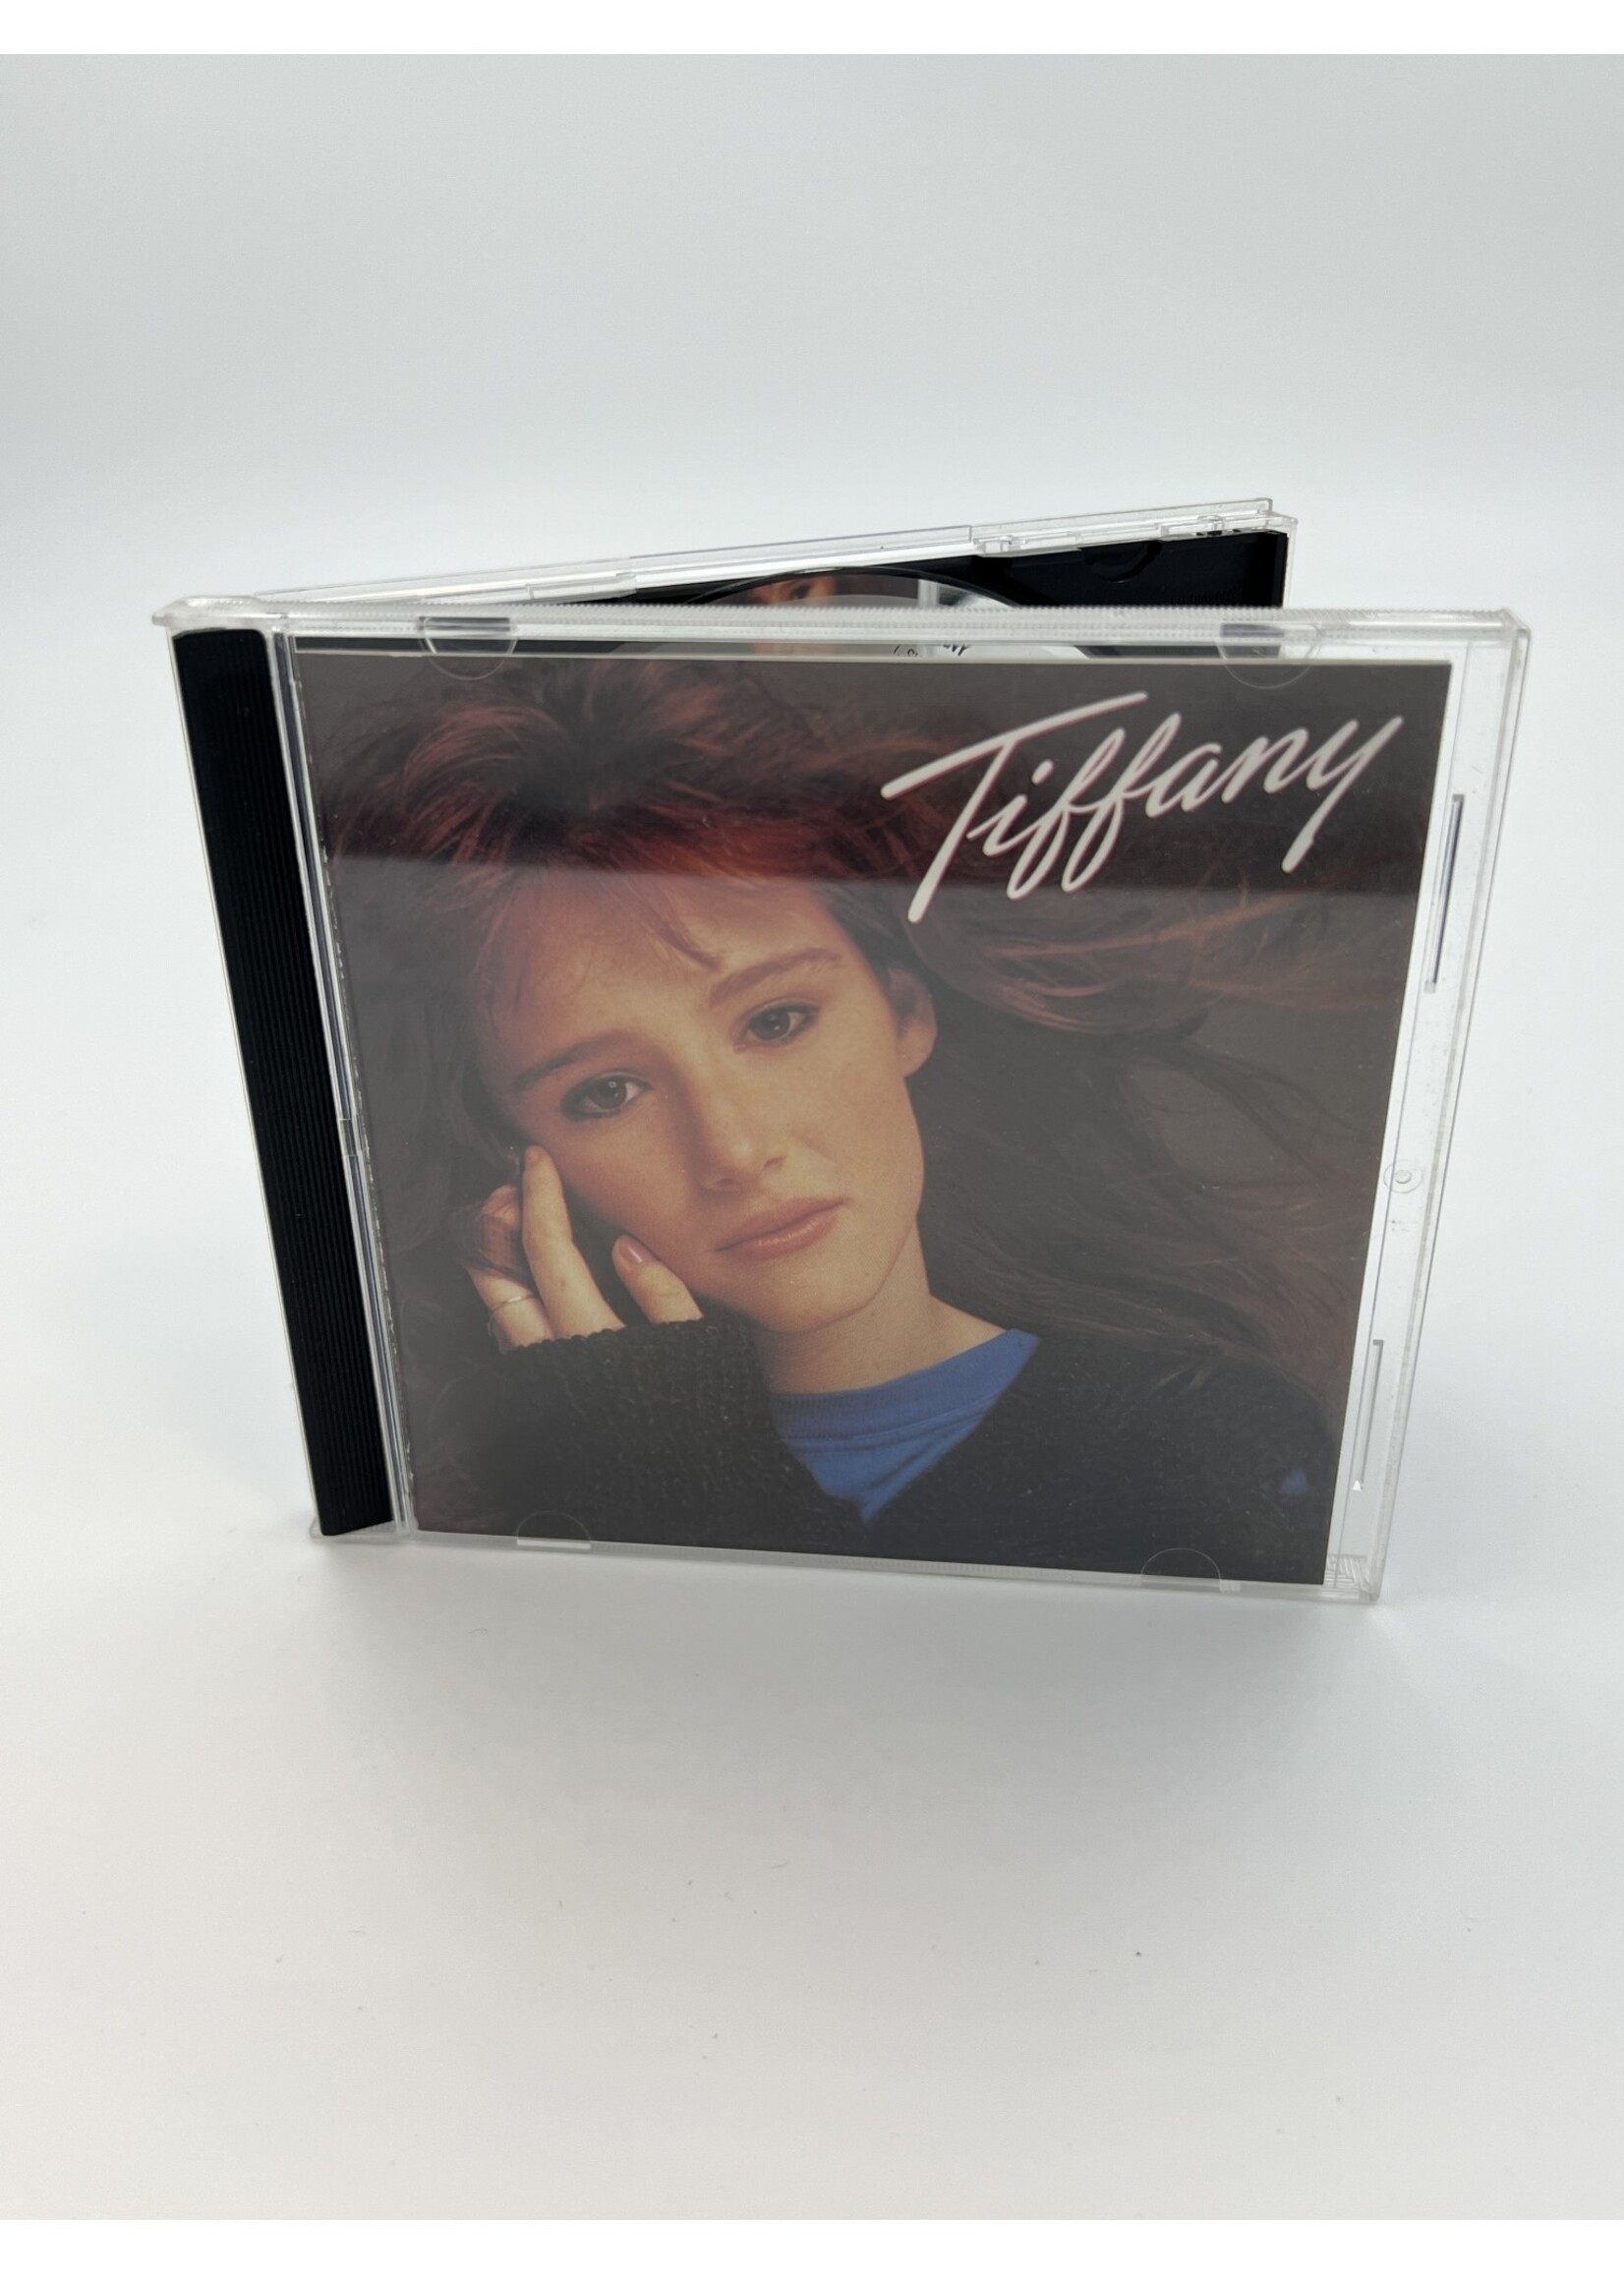 CD Tiffany Self Titled CD